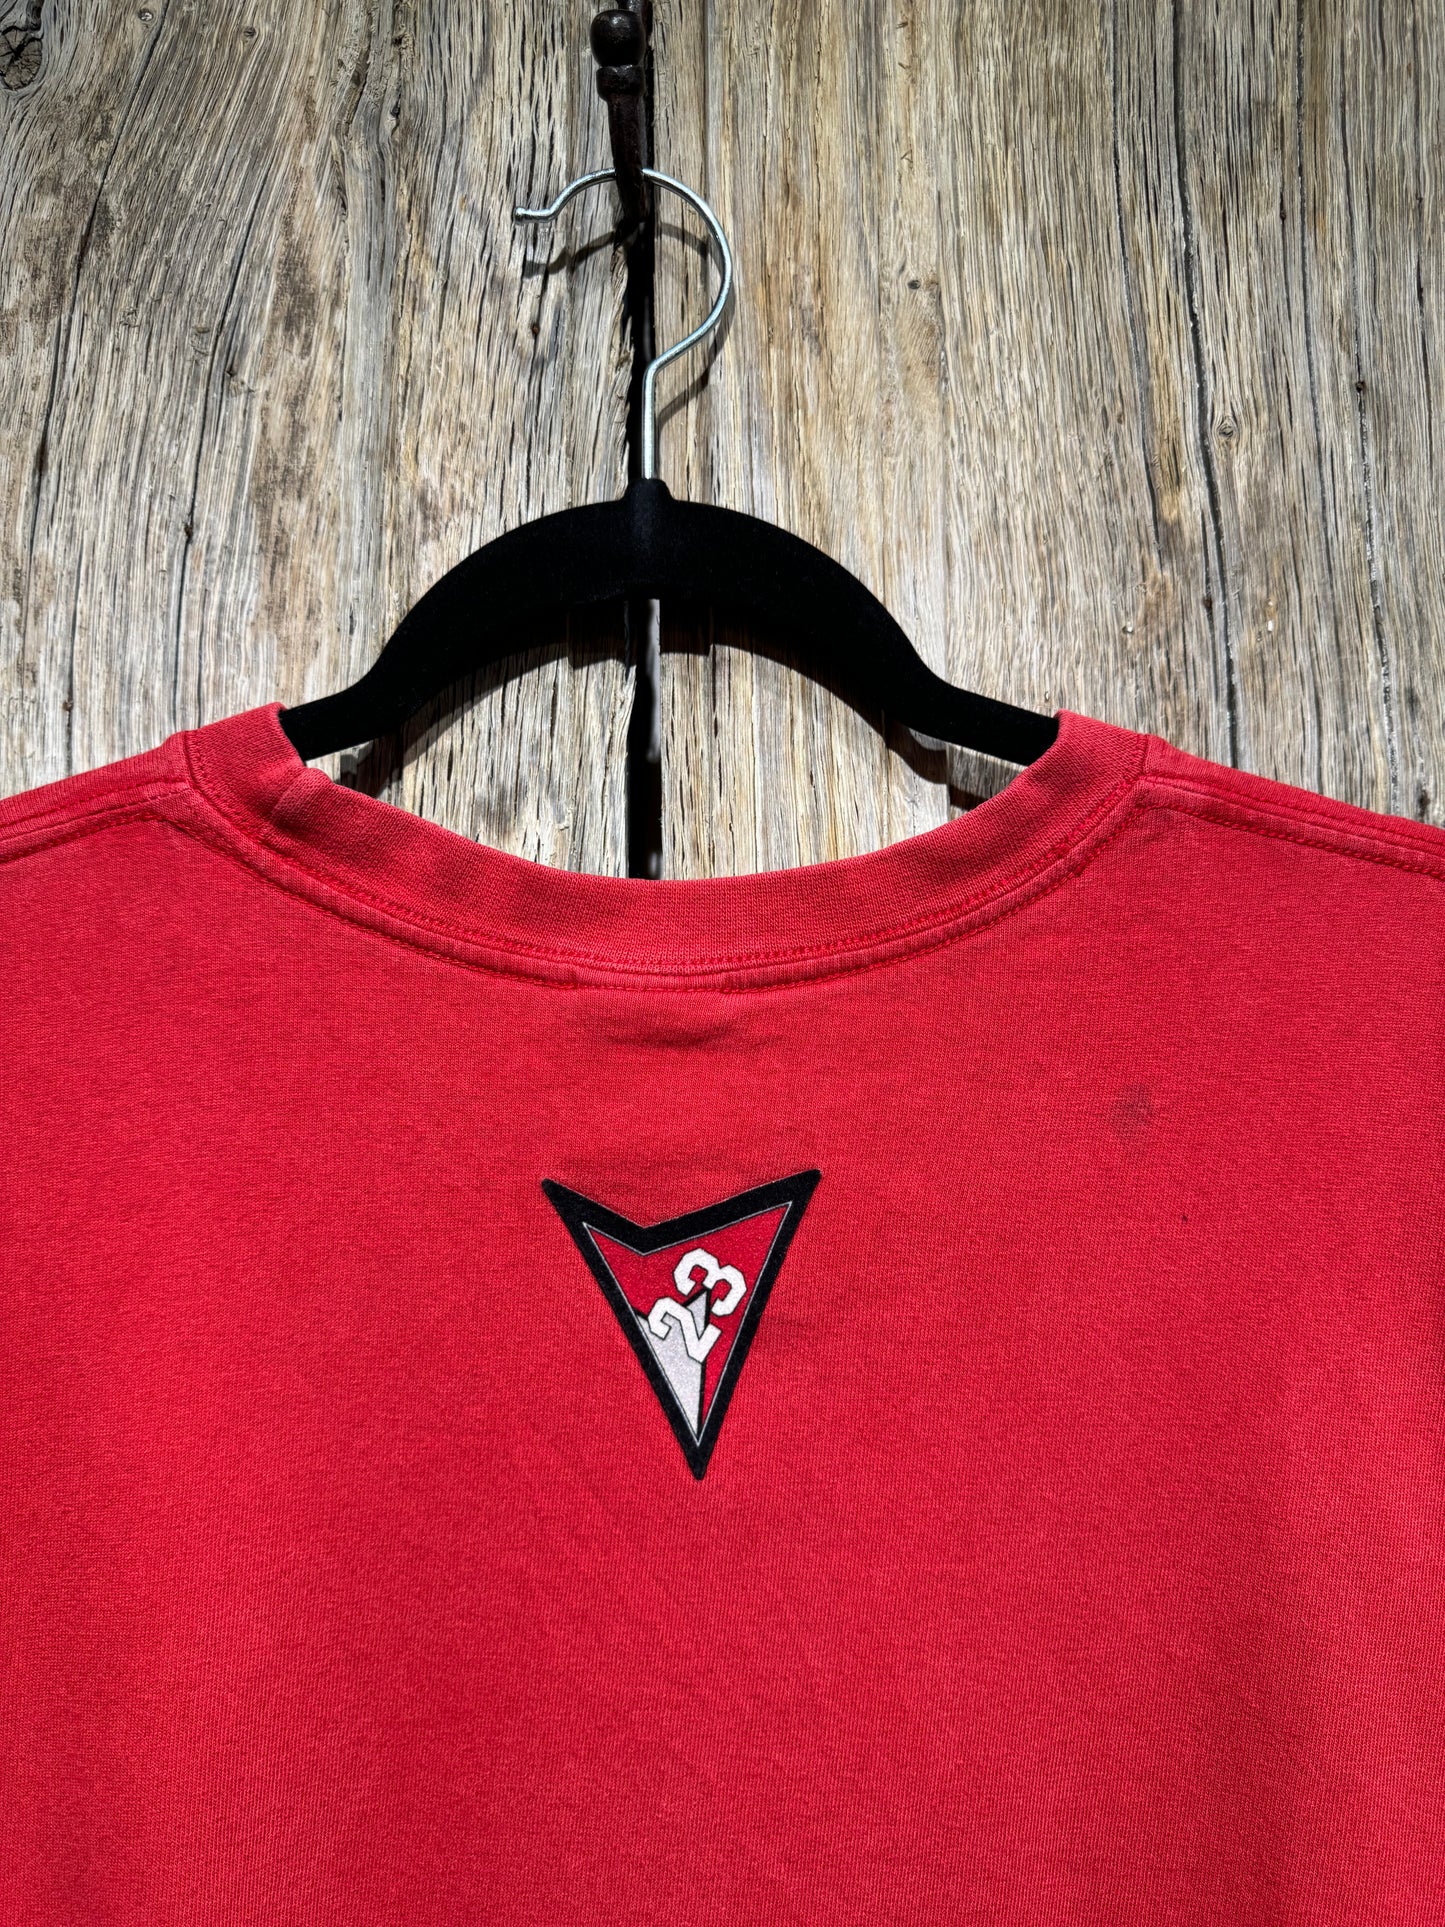 Vintage Red Jordan Air Logo Tee